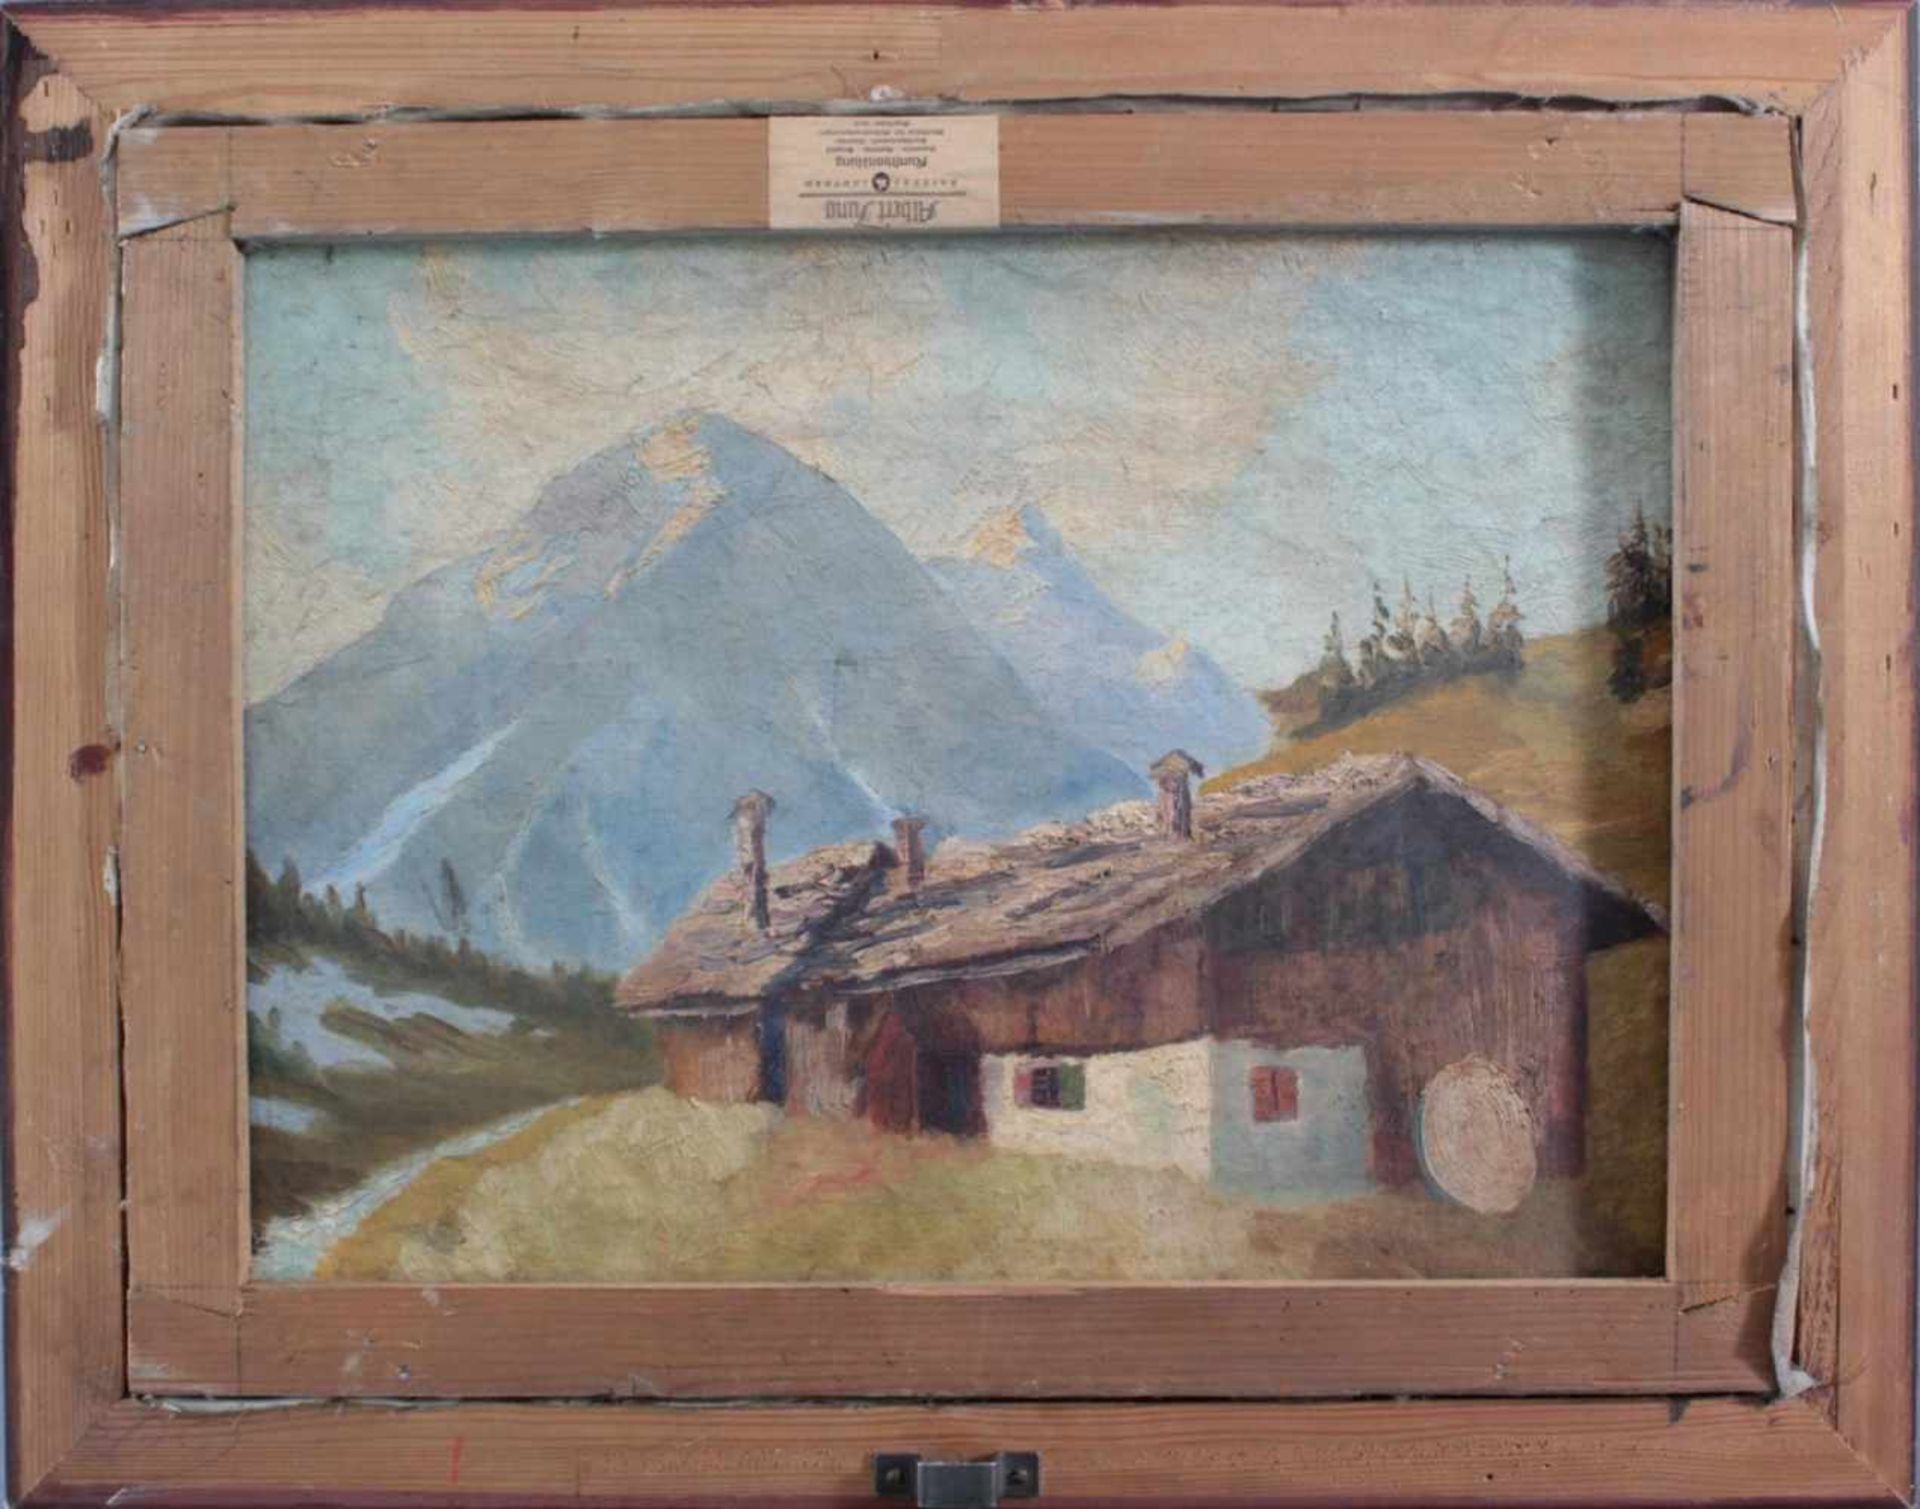 Brutscher, A., Künstler des 20. Jh. tätig in Wangen, "Kapelle im Gebirge"Öl auf Leinwand gemalt, - Image 4 of 5